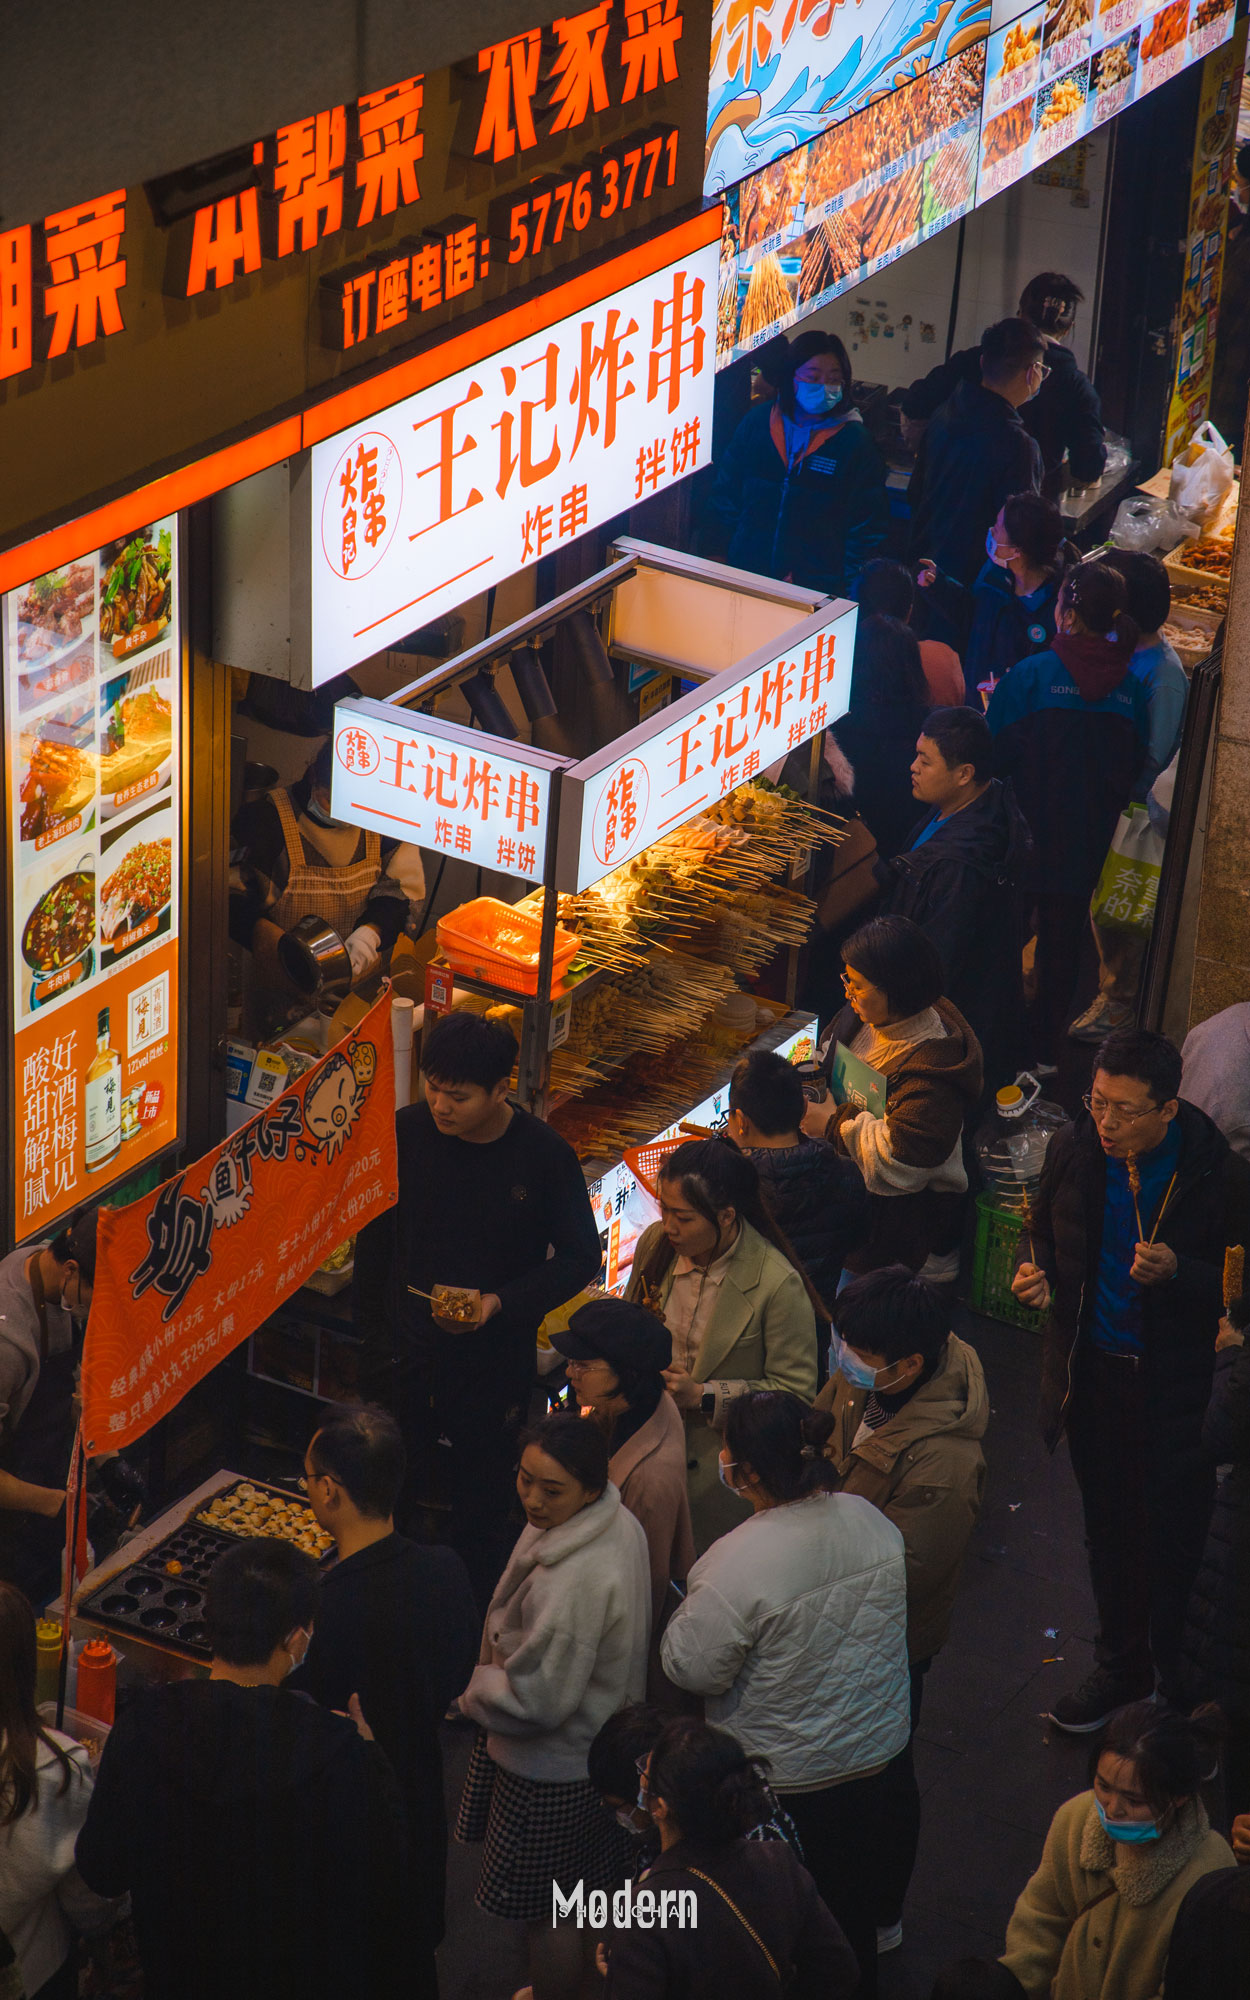 泗泾古镇美食一条街图片